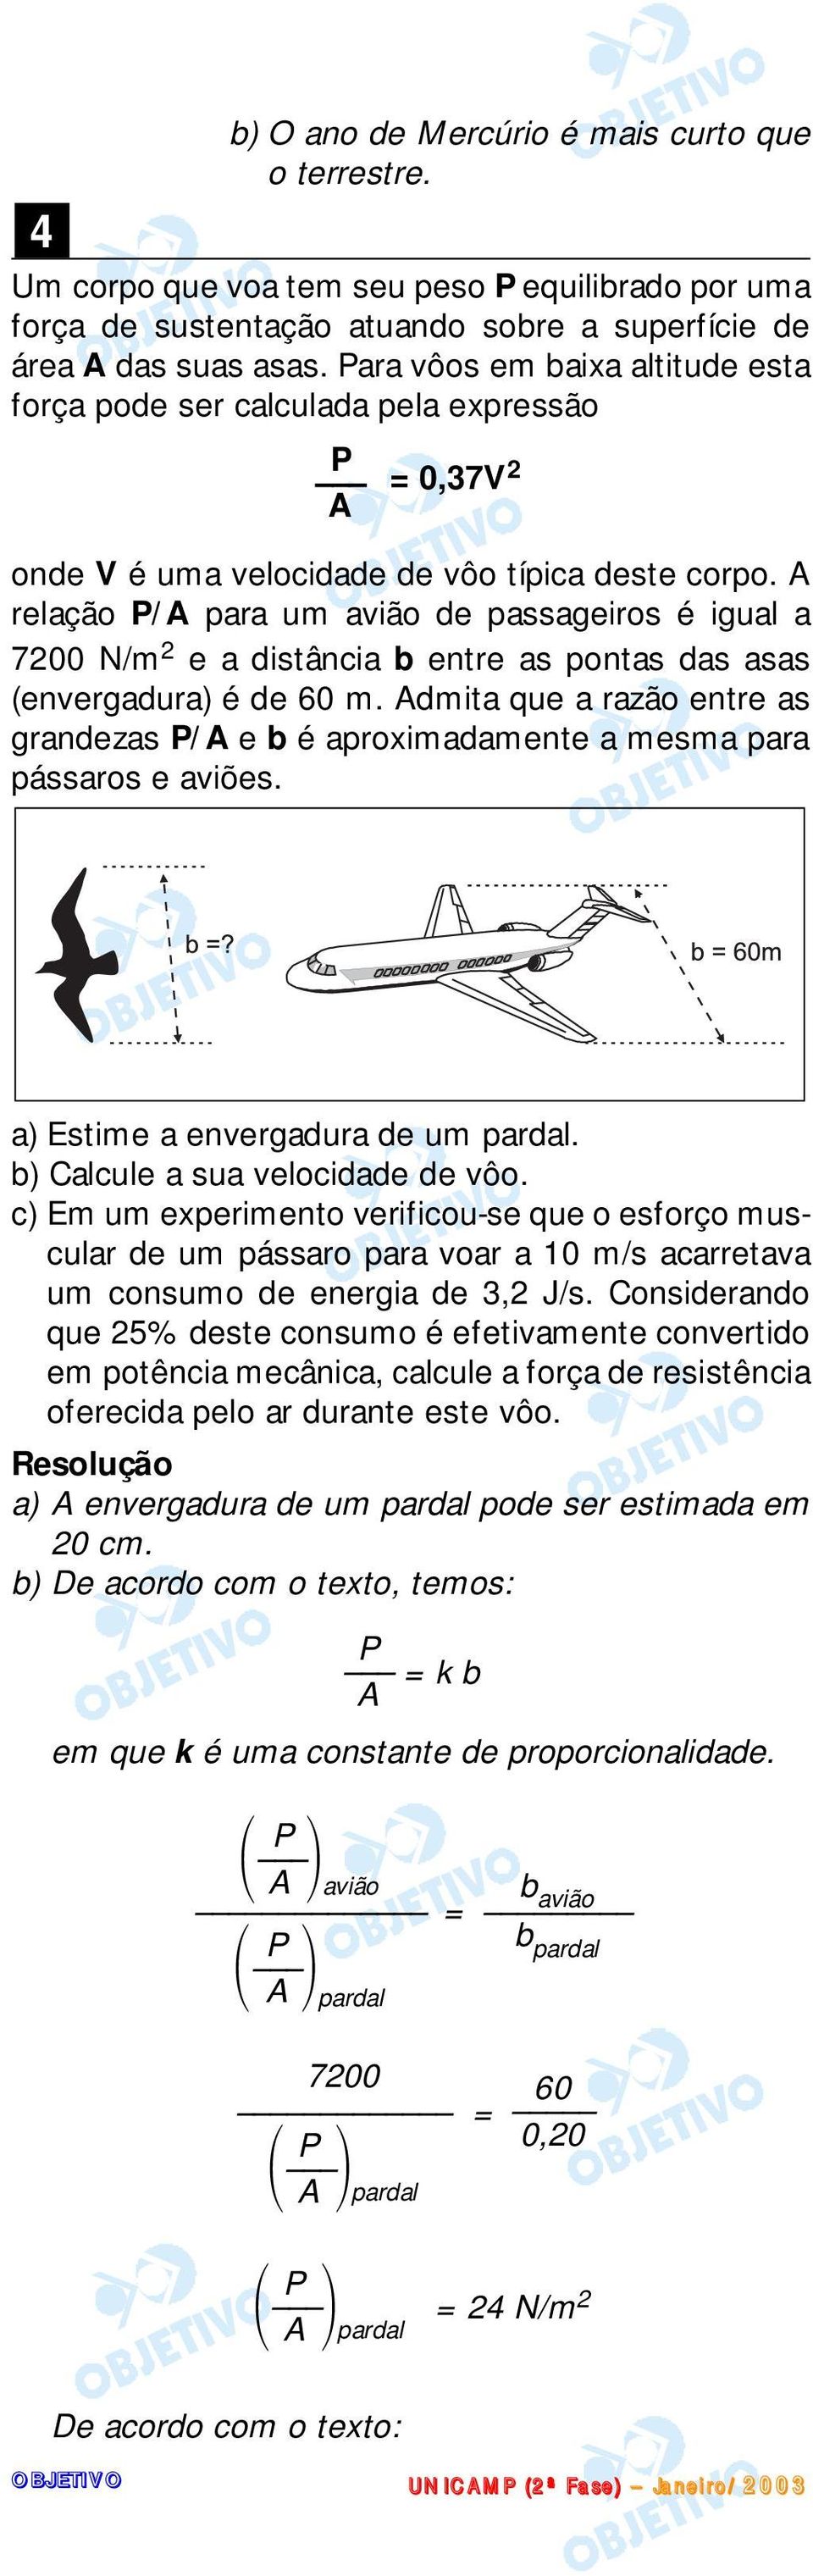 A relação P/A para um avião de passageiros é igual a 700 N/m e a distância b entre as pontas das asas (envergadura) é de 60 m.